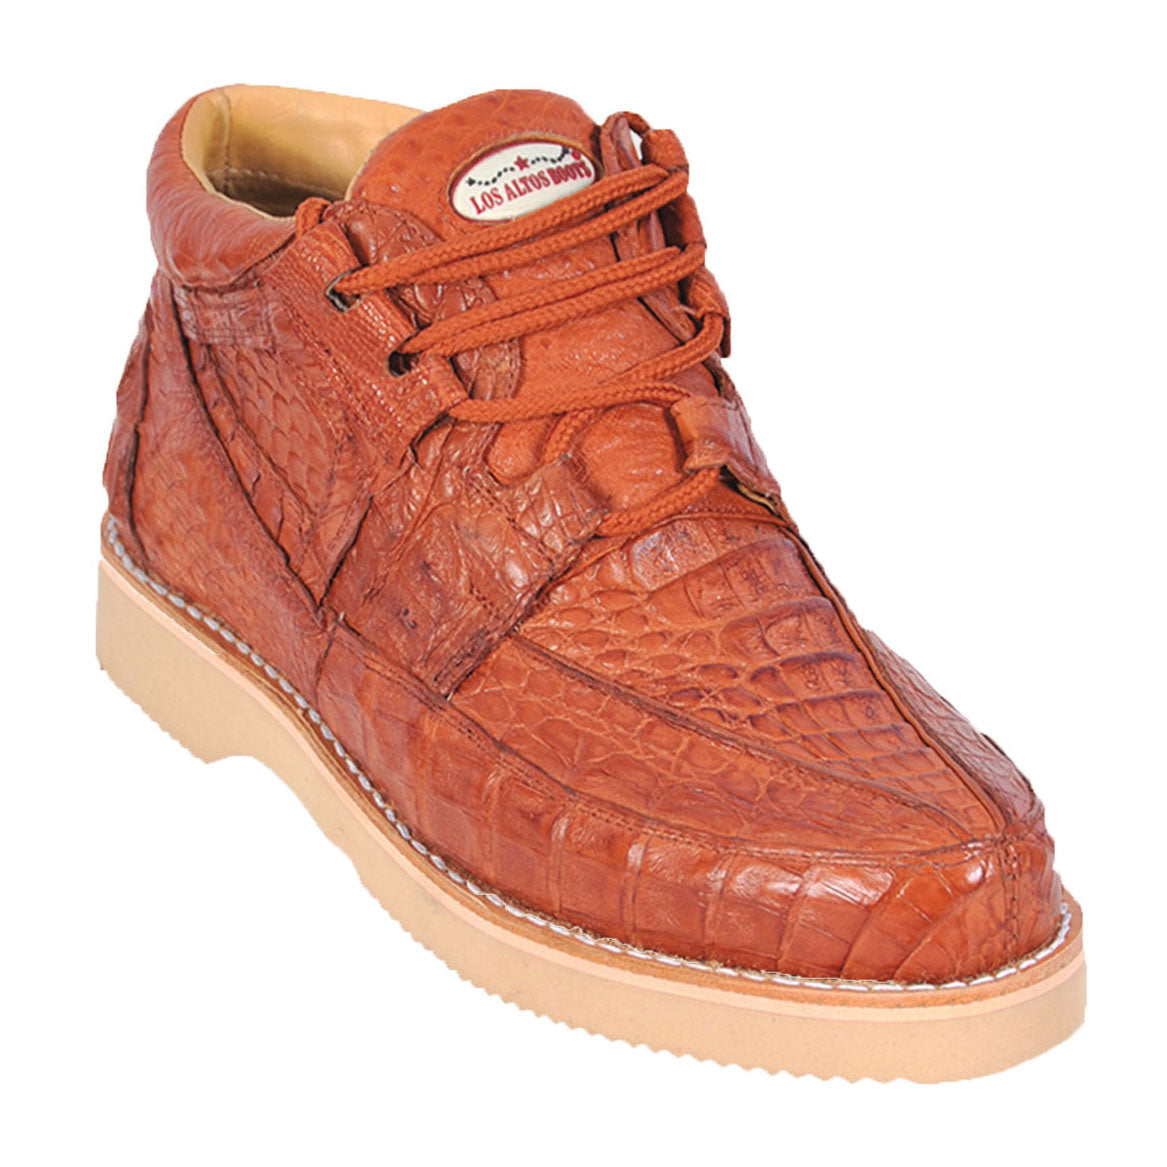 Caiman Skin Shoe LAB-ZA0601